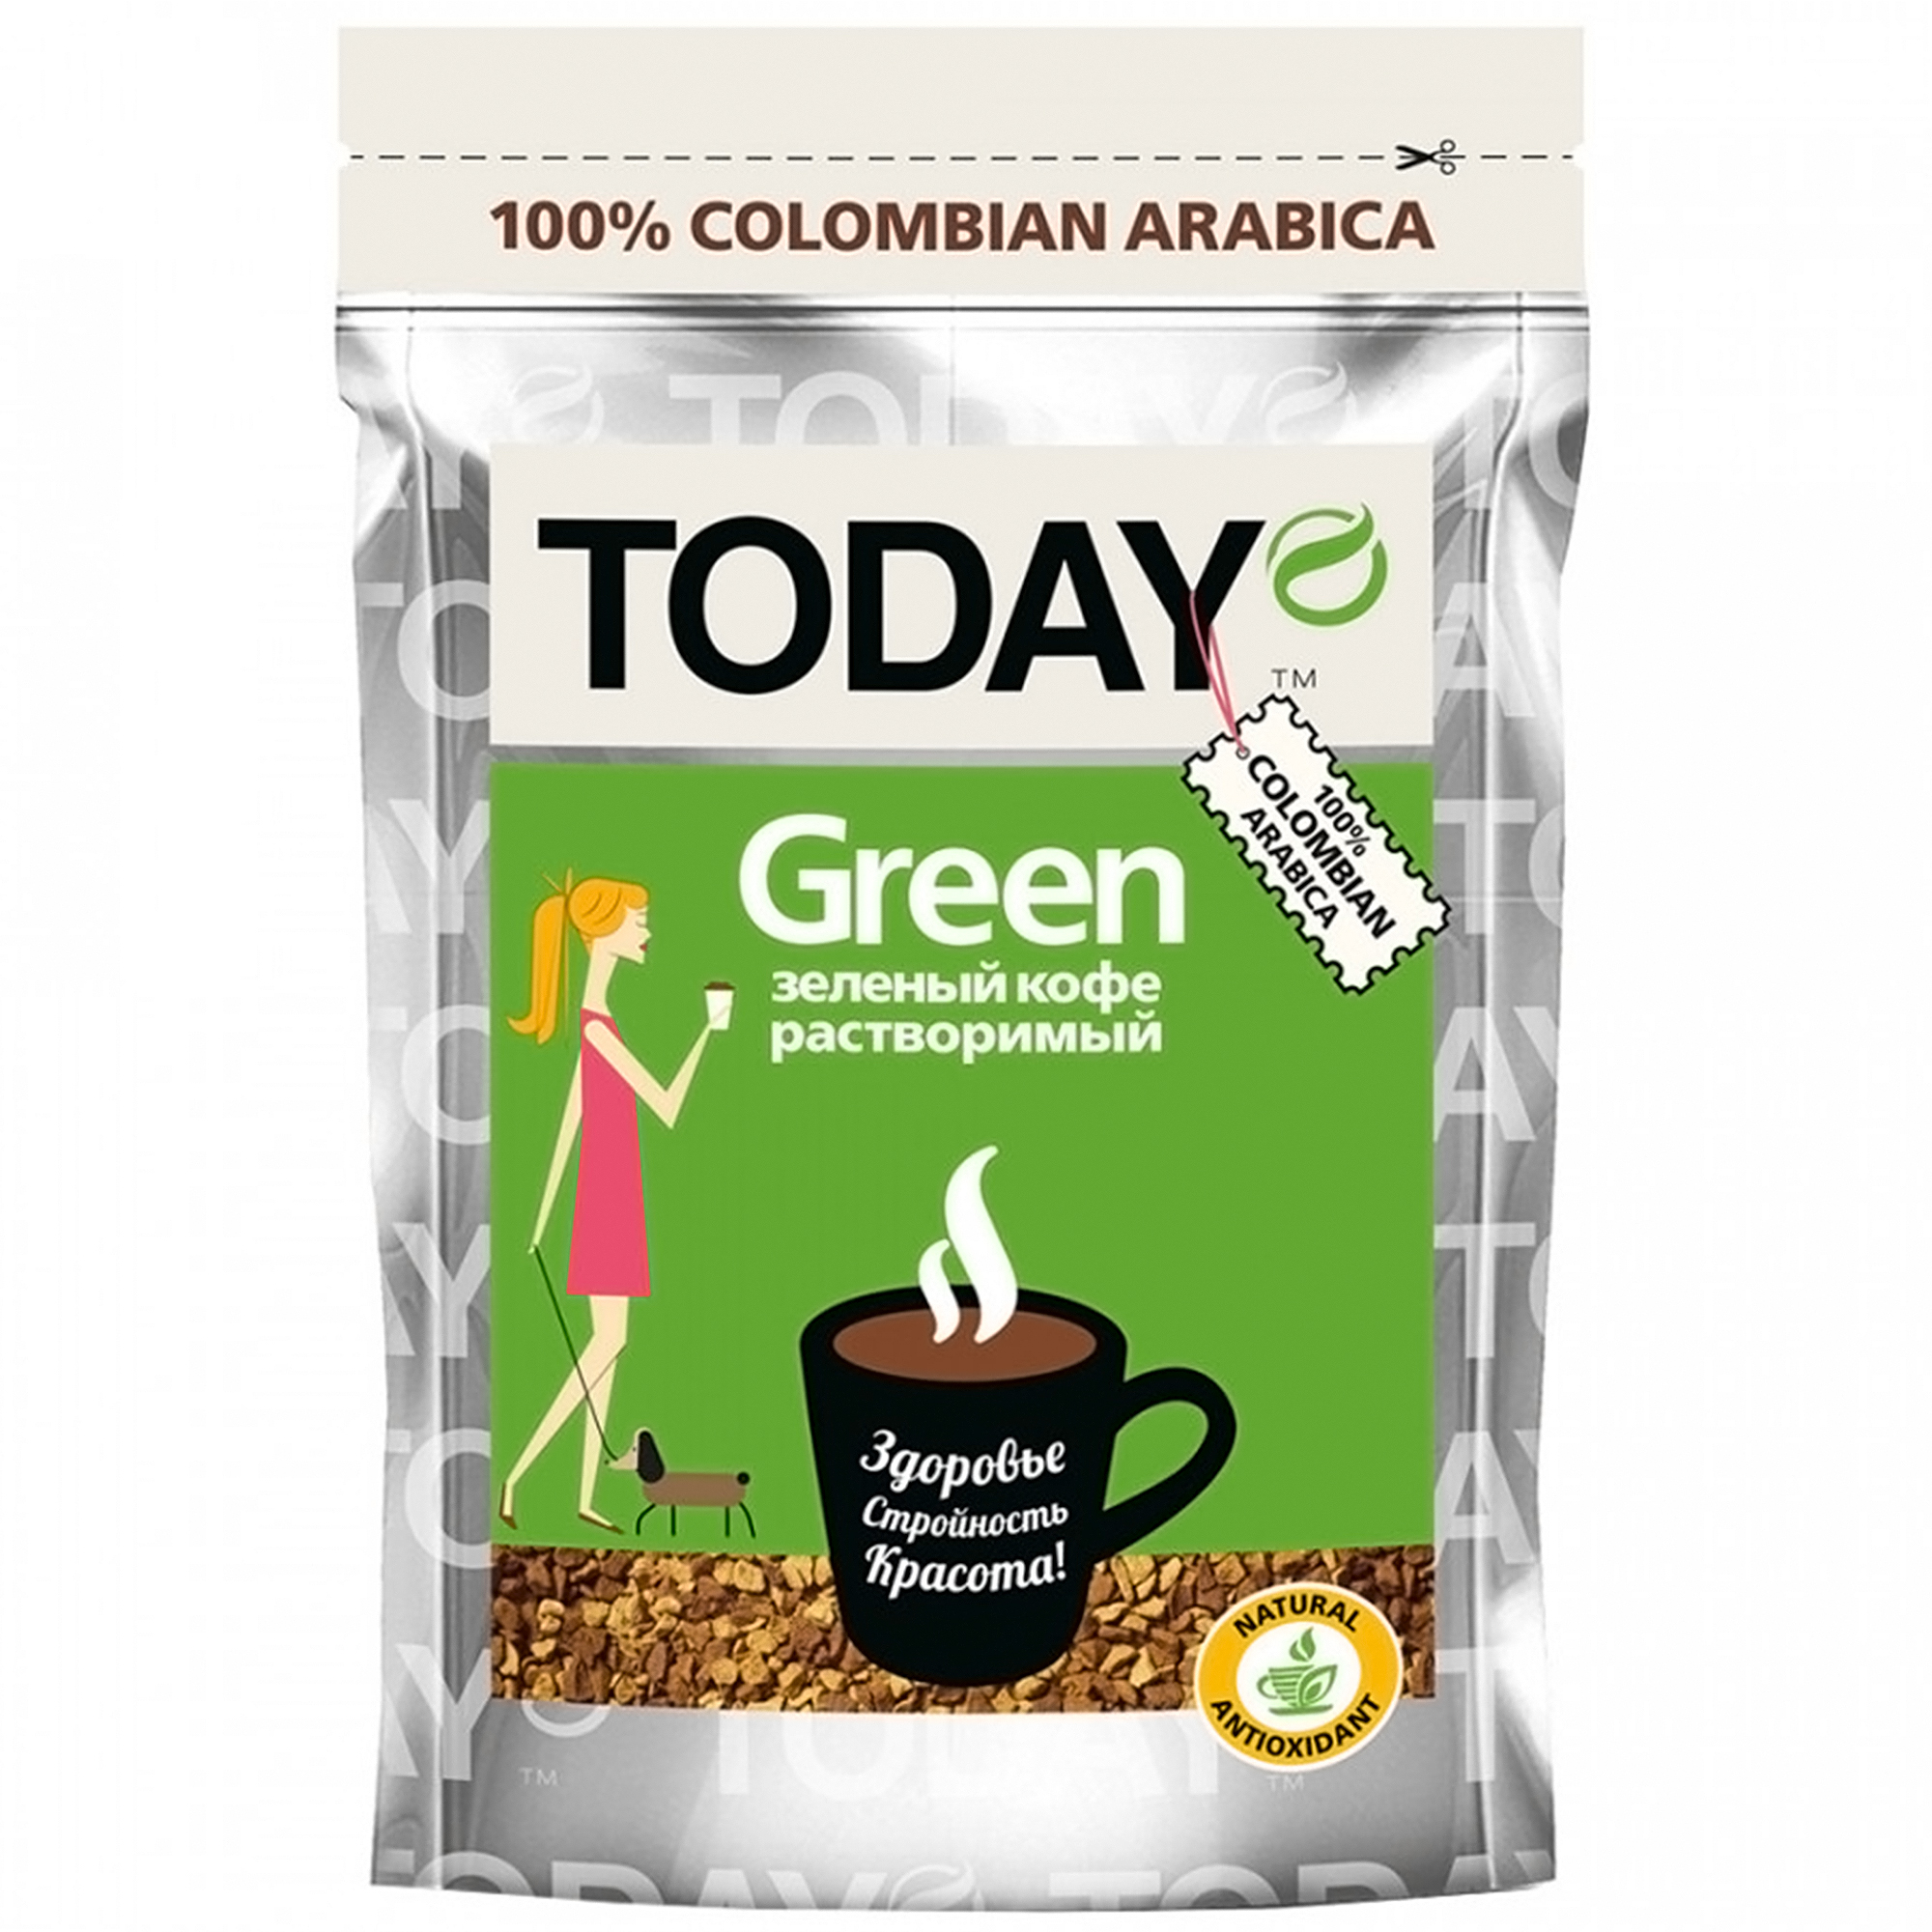 Кофе Today Green растворимый сублимированный, 75 г кофе аравийский арабика семена алтая